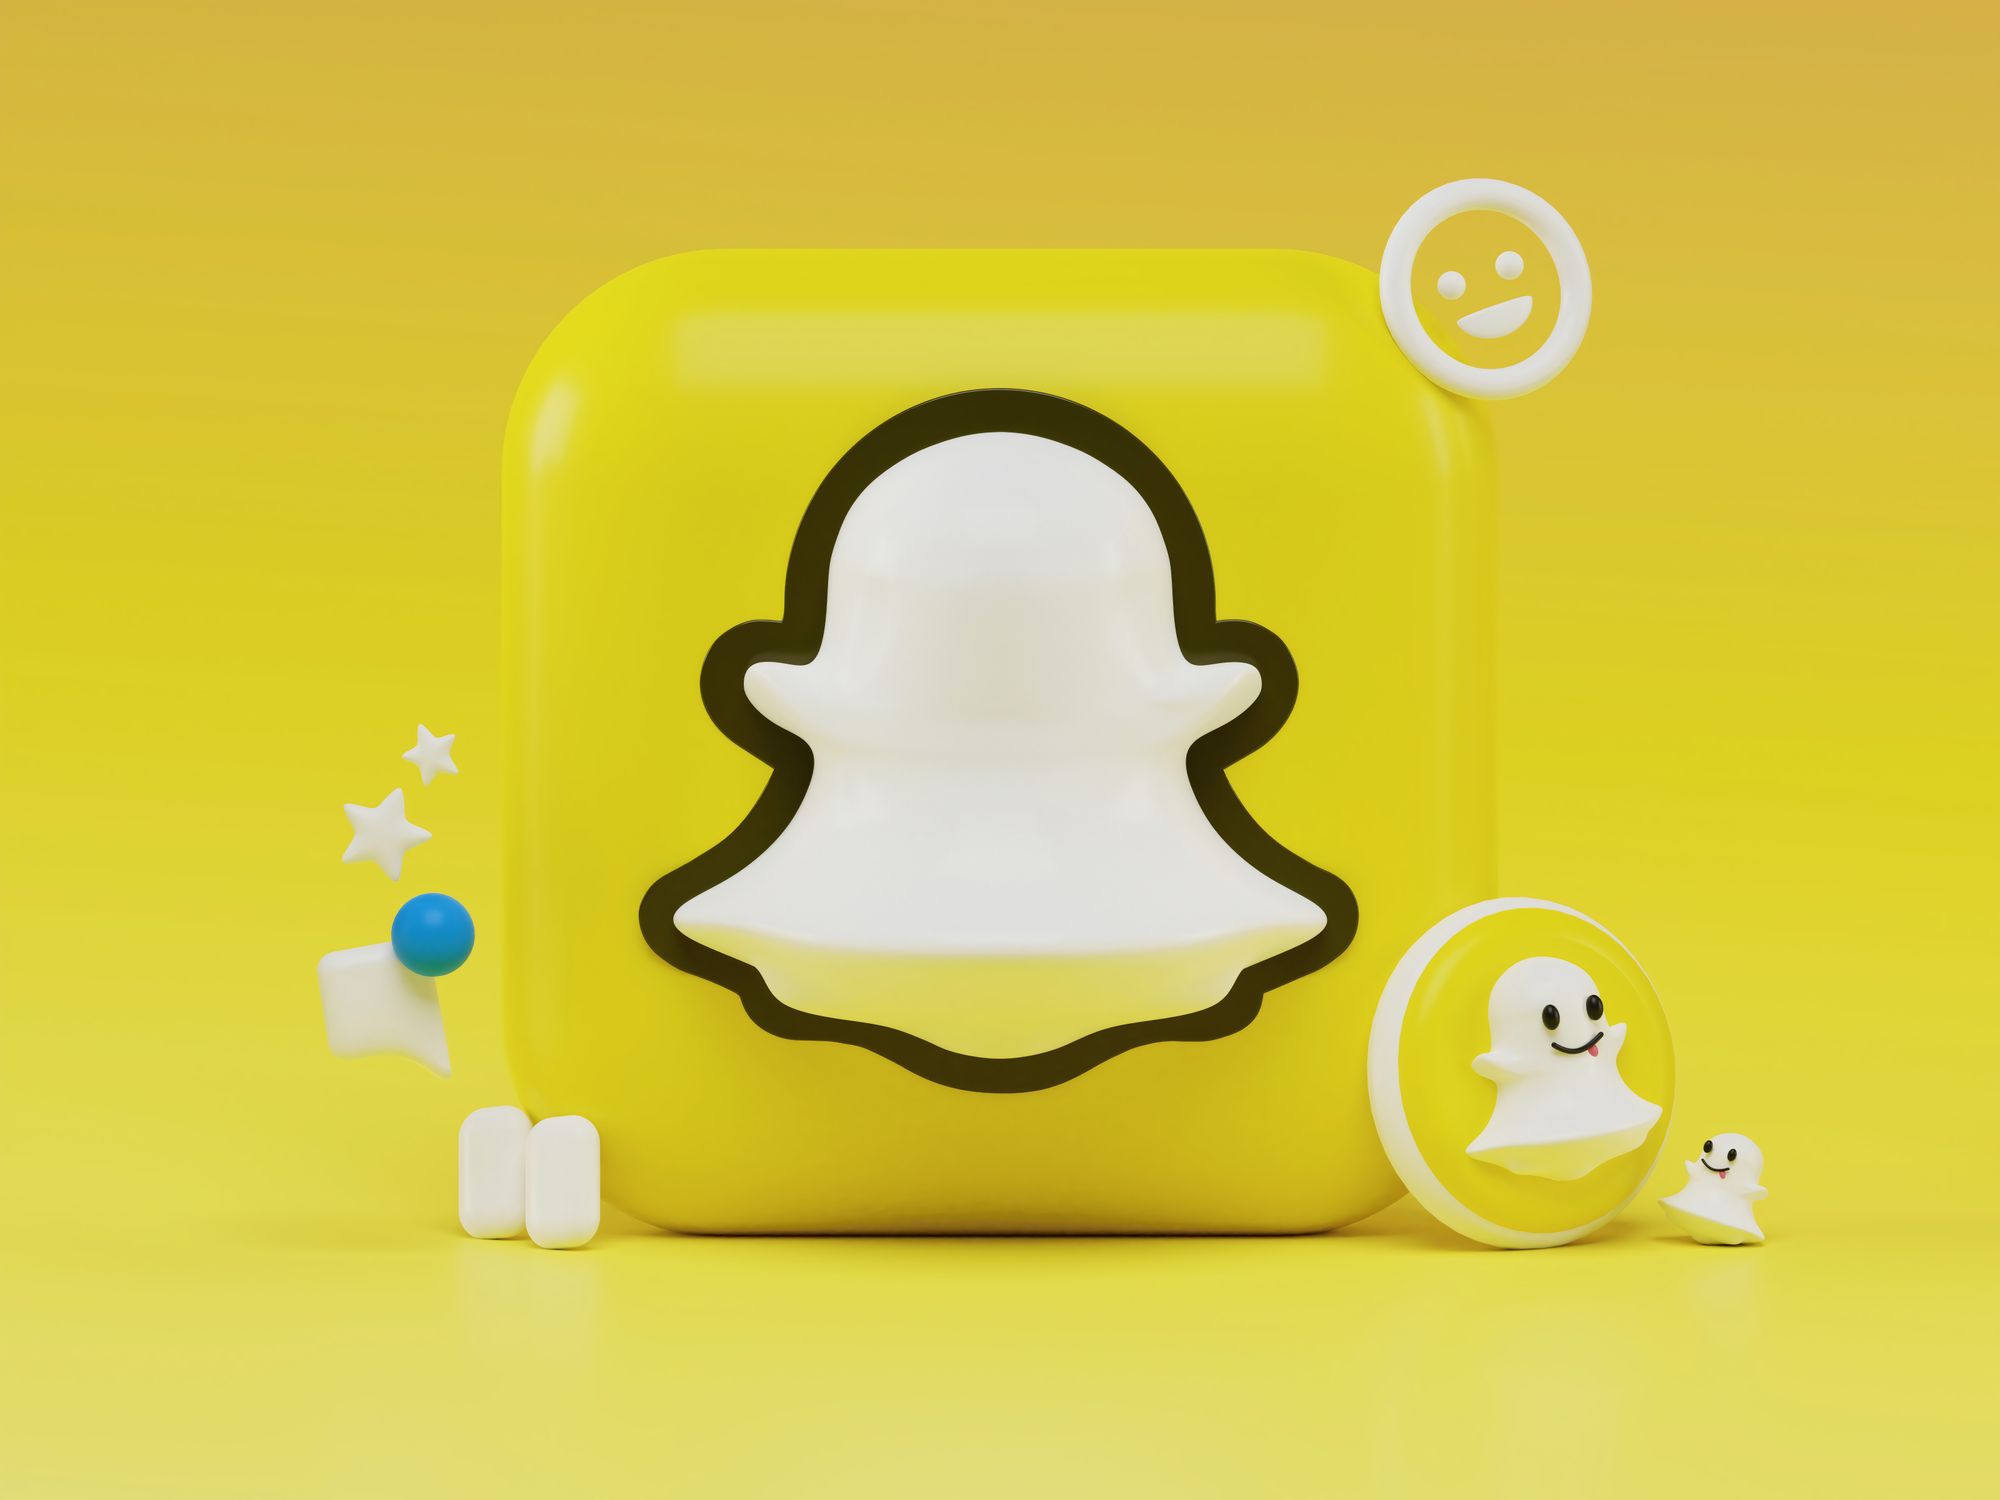 Publicité Snapchat Ads : tout savoir avant de vous lancer